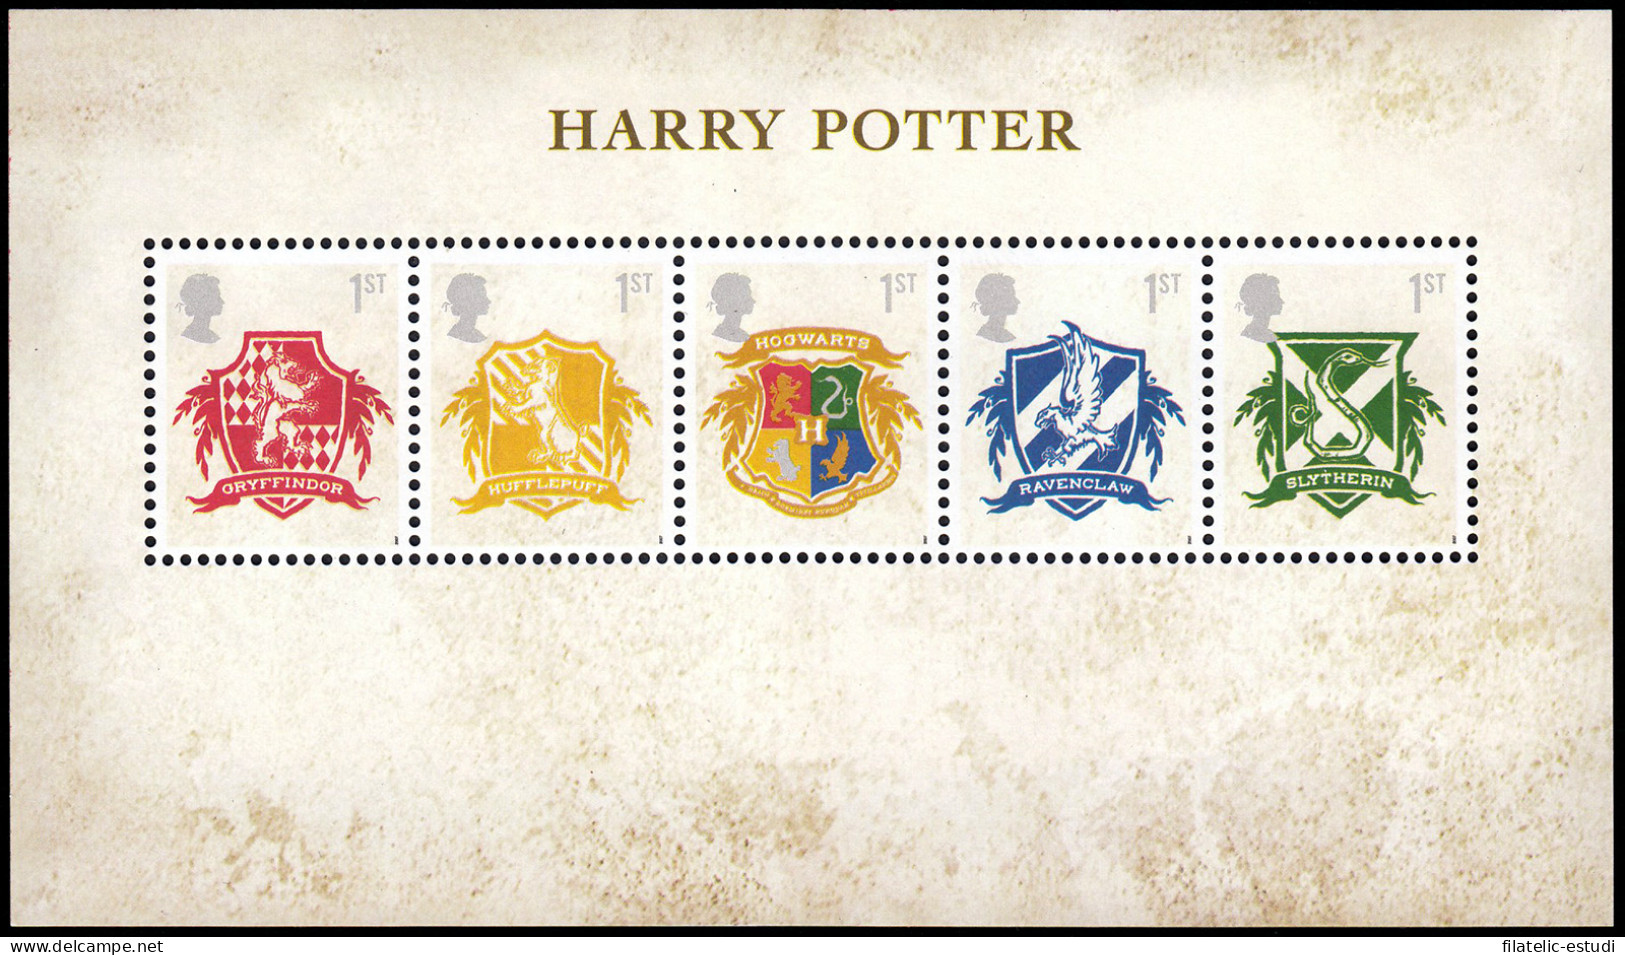 Gran Bretaña HB 49 2007 Literatura Harry Potter MNH - Blocs-feuillets